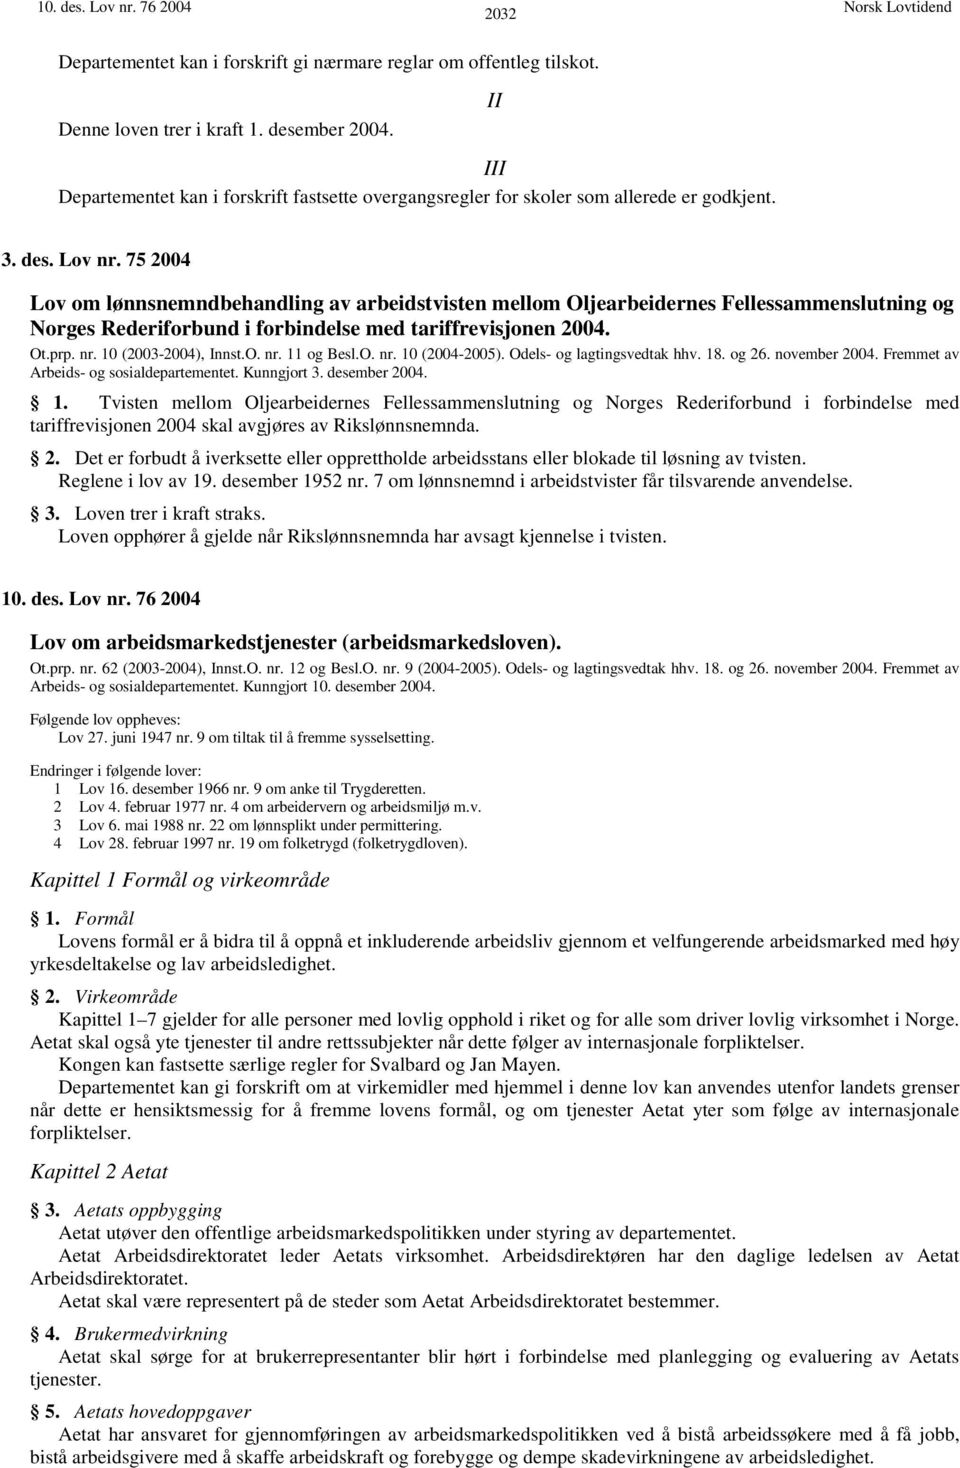 75 2004 Lov om lønnsnemndbehandling av arbeidstvisten mellom Oljearbeidernes Fellessammenslutning og Norges Rederiforbund i forbindelse med tariffrevisjonen 2004. Ot.prp. nr. 10 (2003-2004), Innst.O. nr. 11 og Besl.